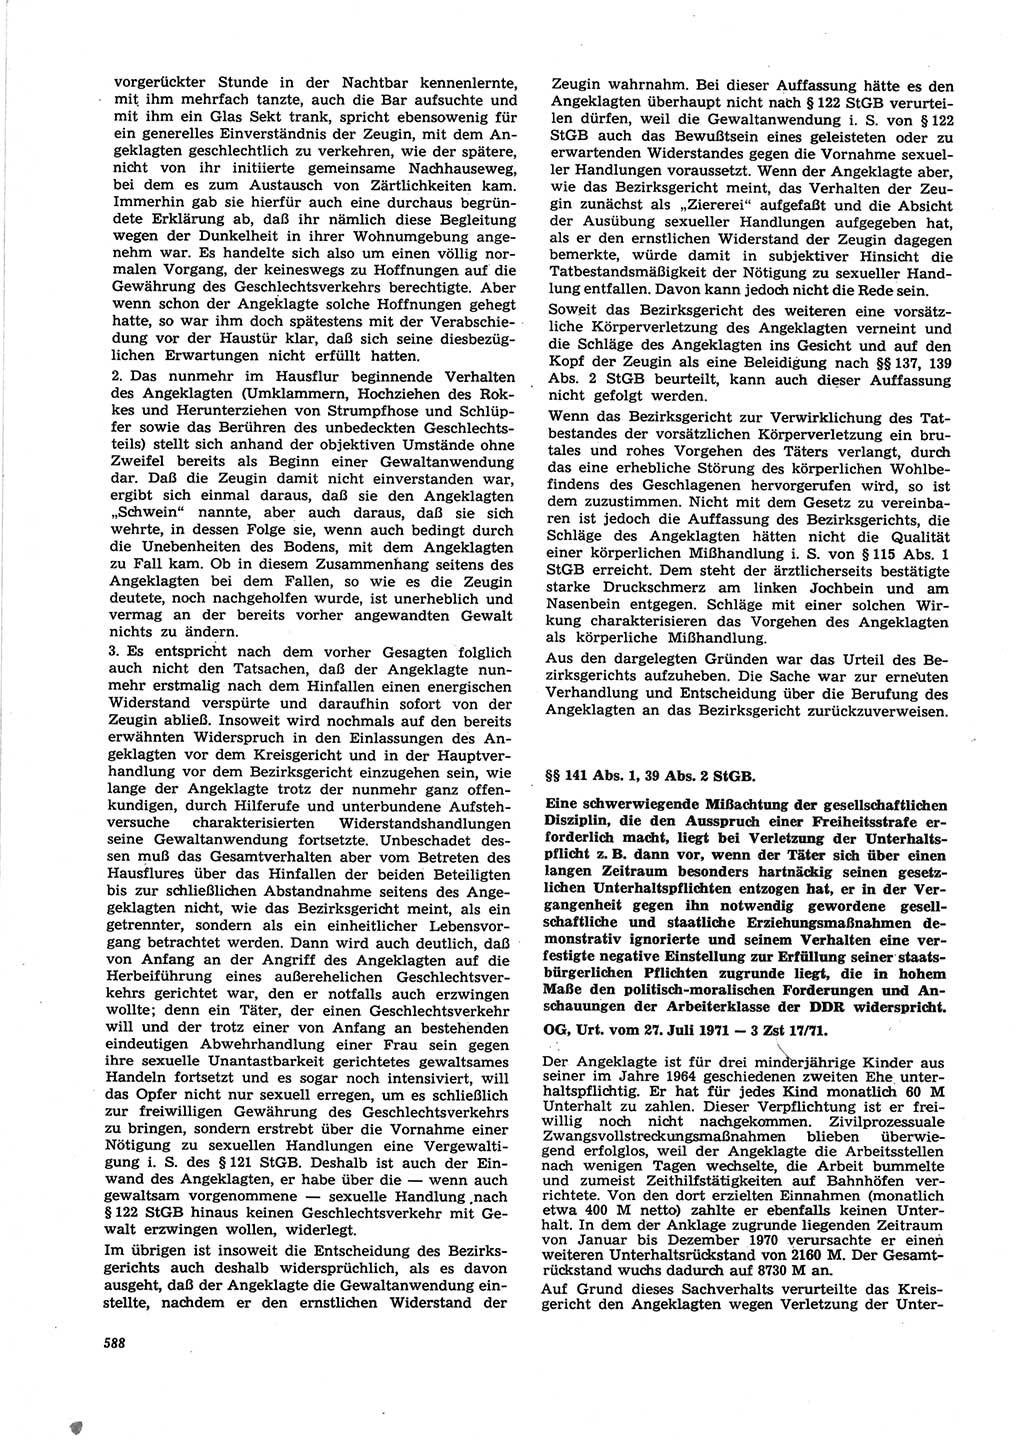 Neue Justiz (NJ), Zeitschrift für Recht und Rechtswissenschaft [Deutsche Demokratische Republik (DDR)], 25. Jahrgang 1971, Seite 588 (NJ DDR 1971, S. 588)